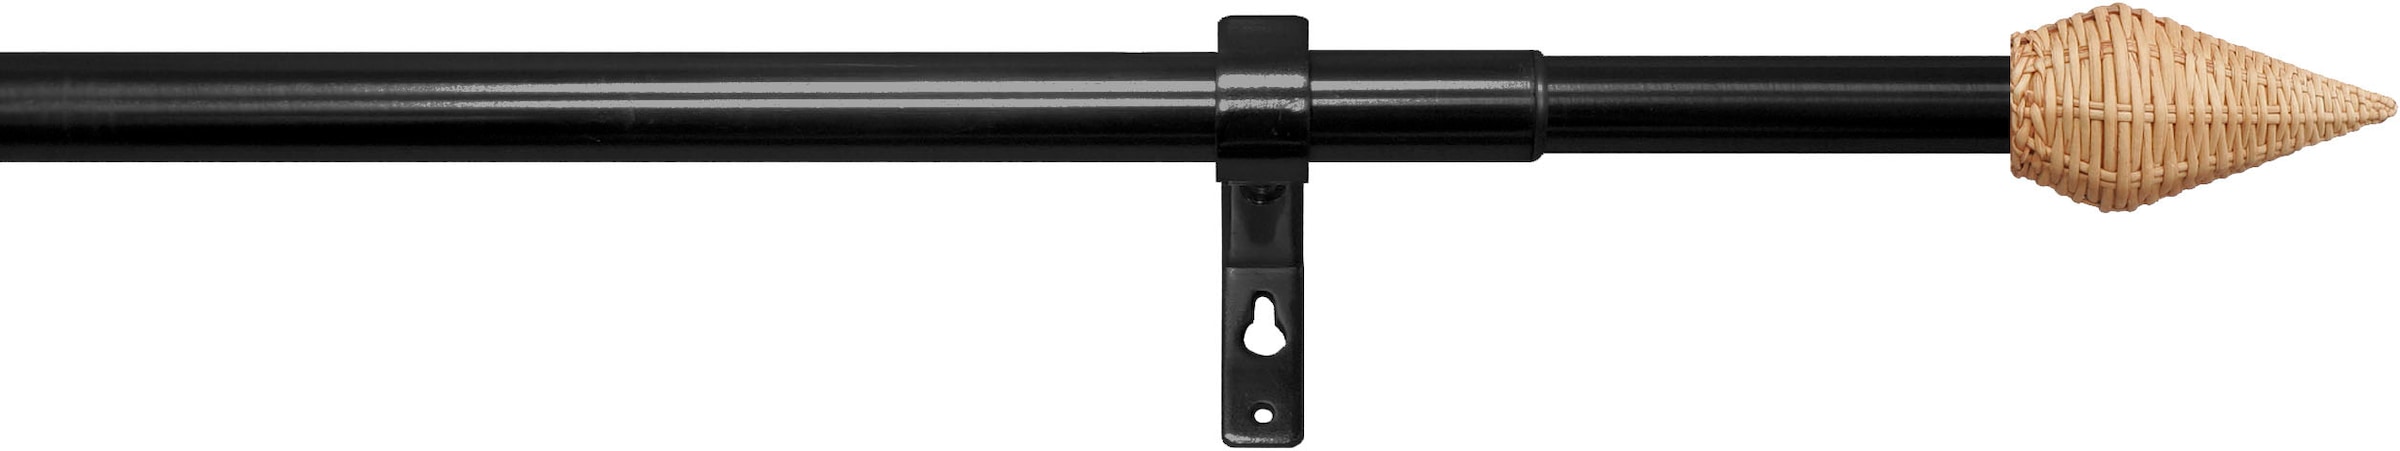 stufenlos Ø13/16mm«, 1 Teleskopstange im OTTO-Shop ausziehbar, »Rattan indeko Gardinenstange läufig-läufig, verstellbare